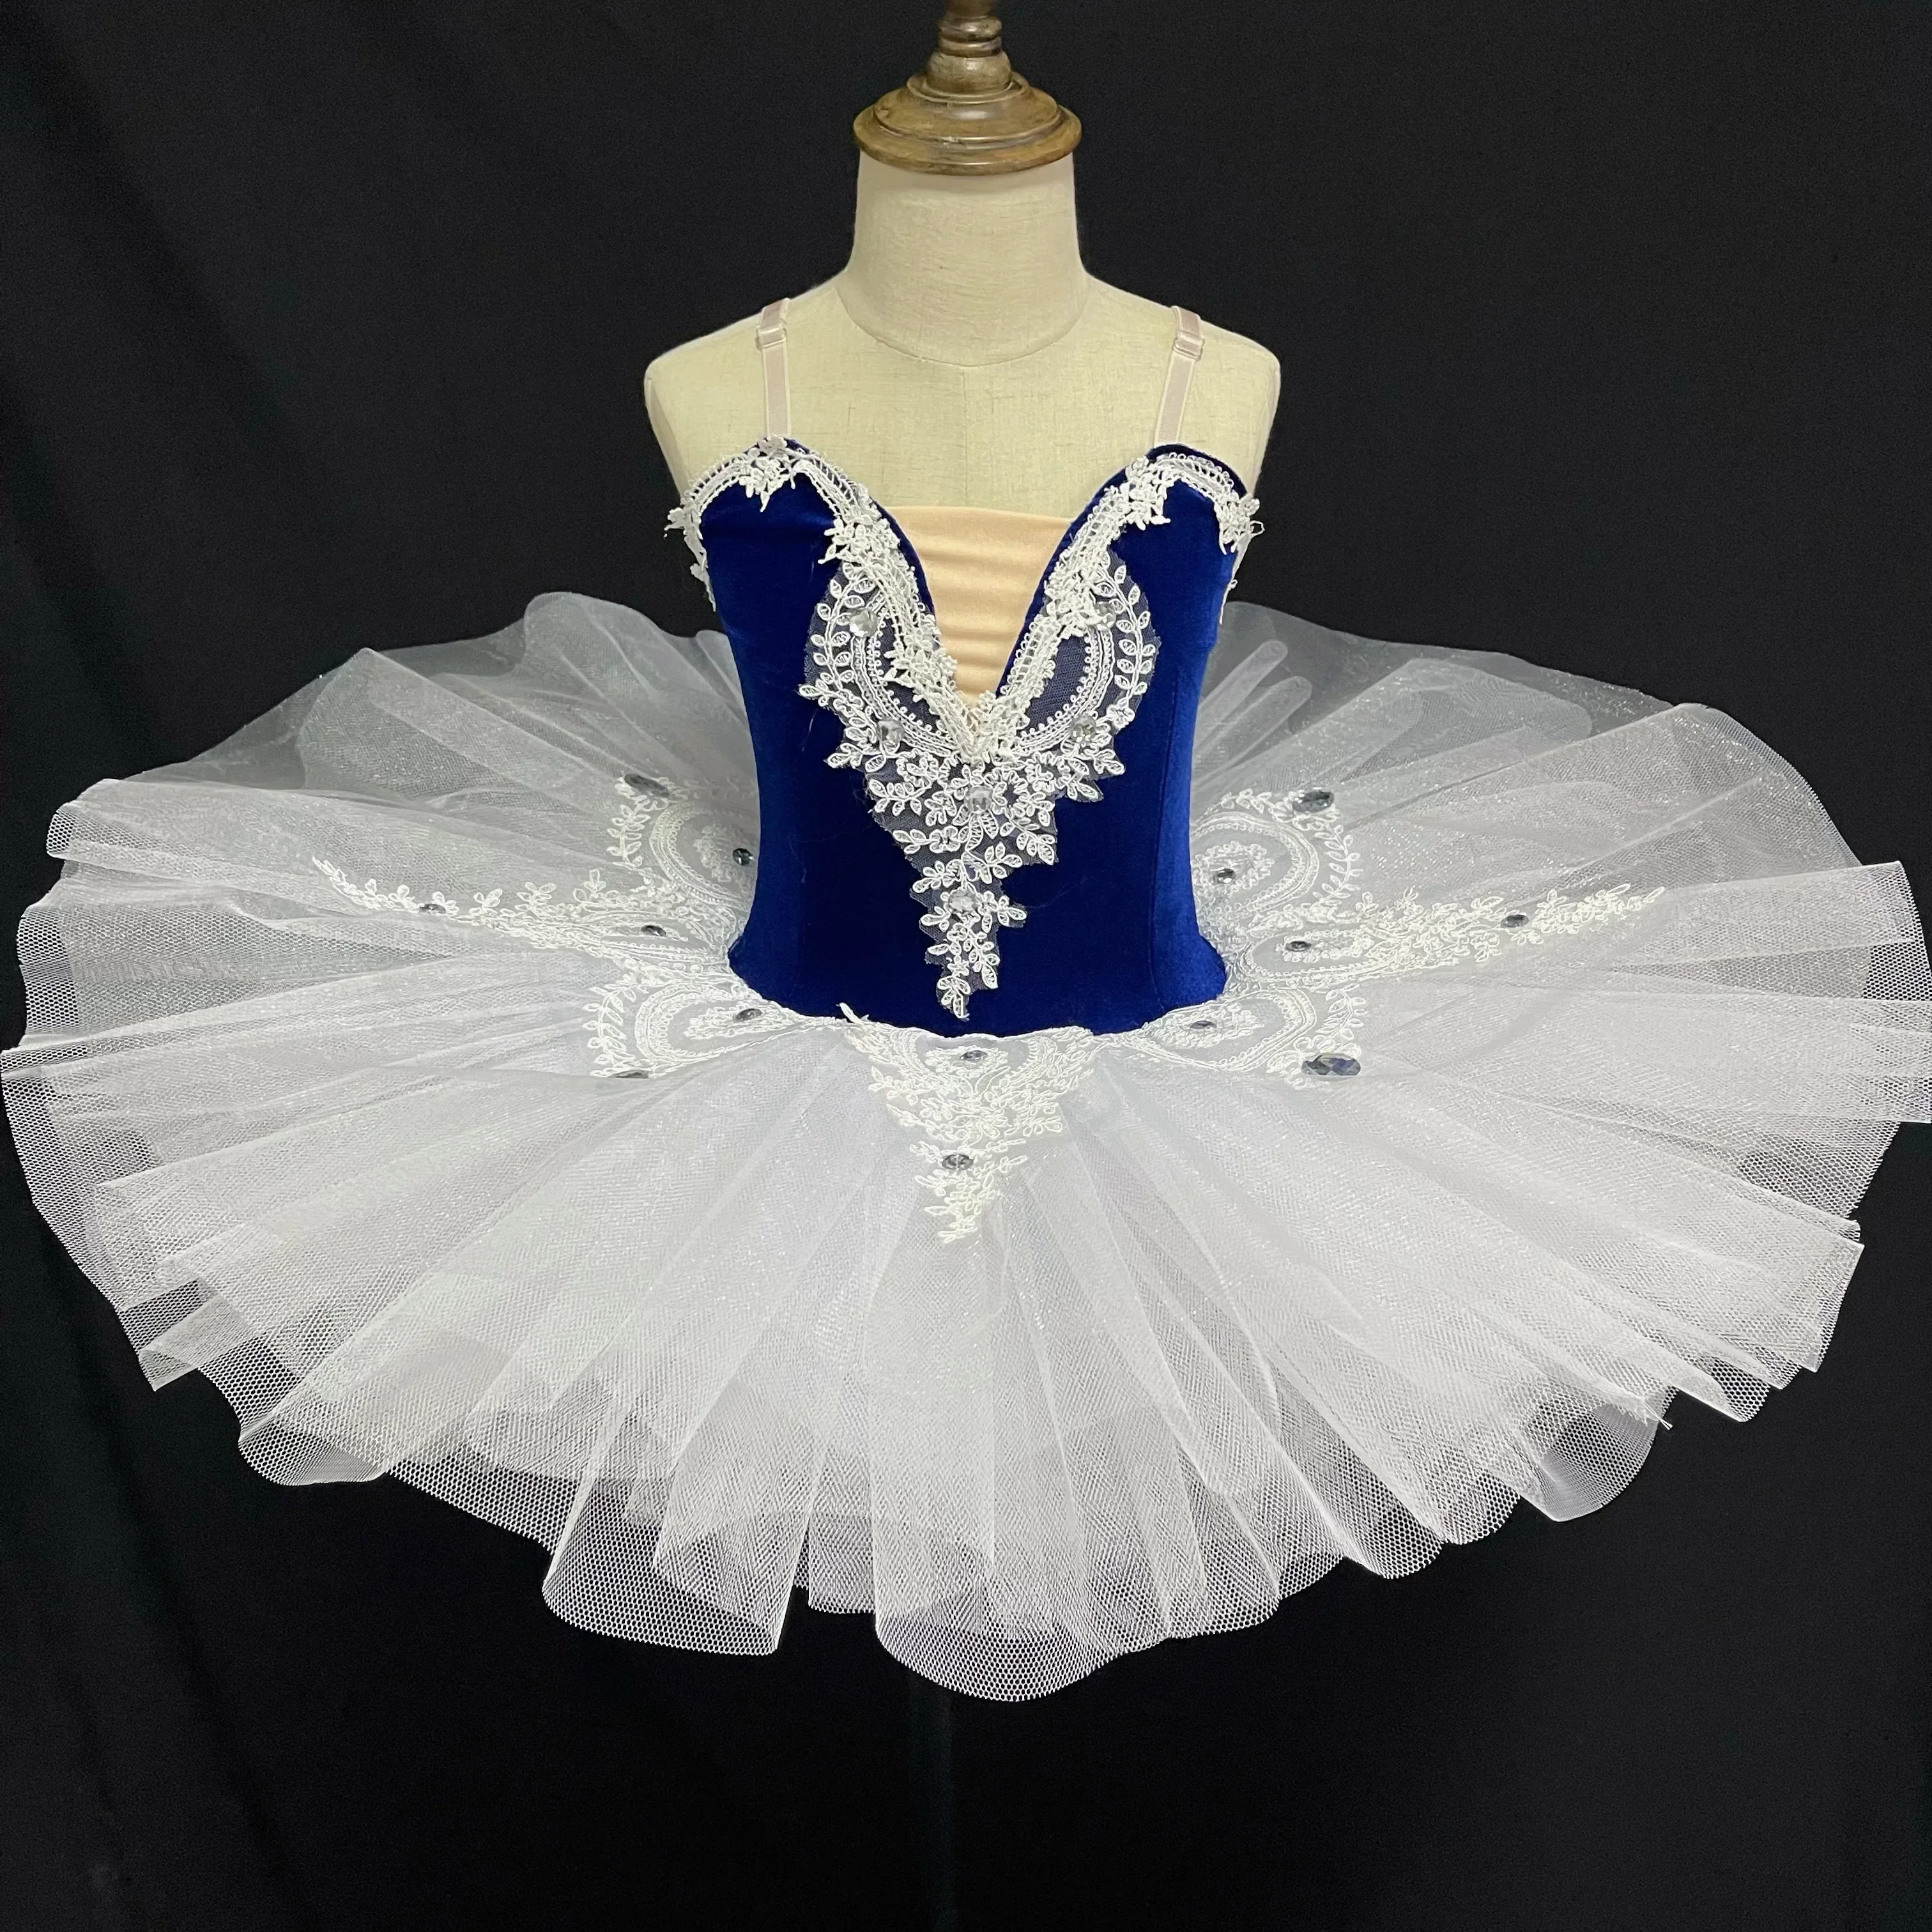 

SunFriday White Ballet Tutu Skirt Ballet Dress Children's Swan Lake Costume Kids Belly Dance Clothing Stage Professional